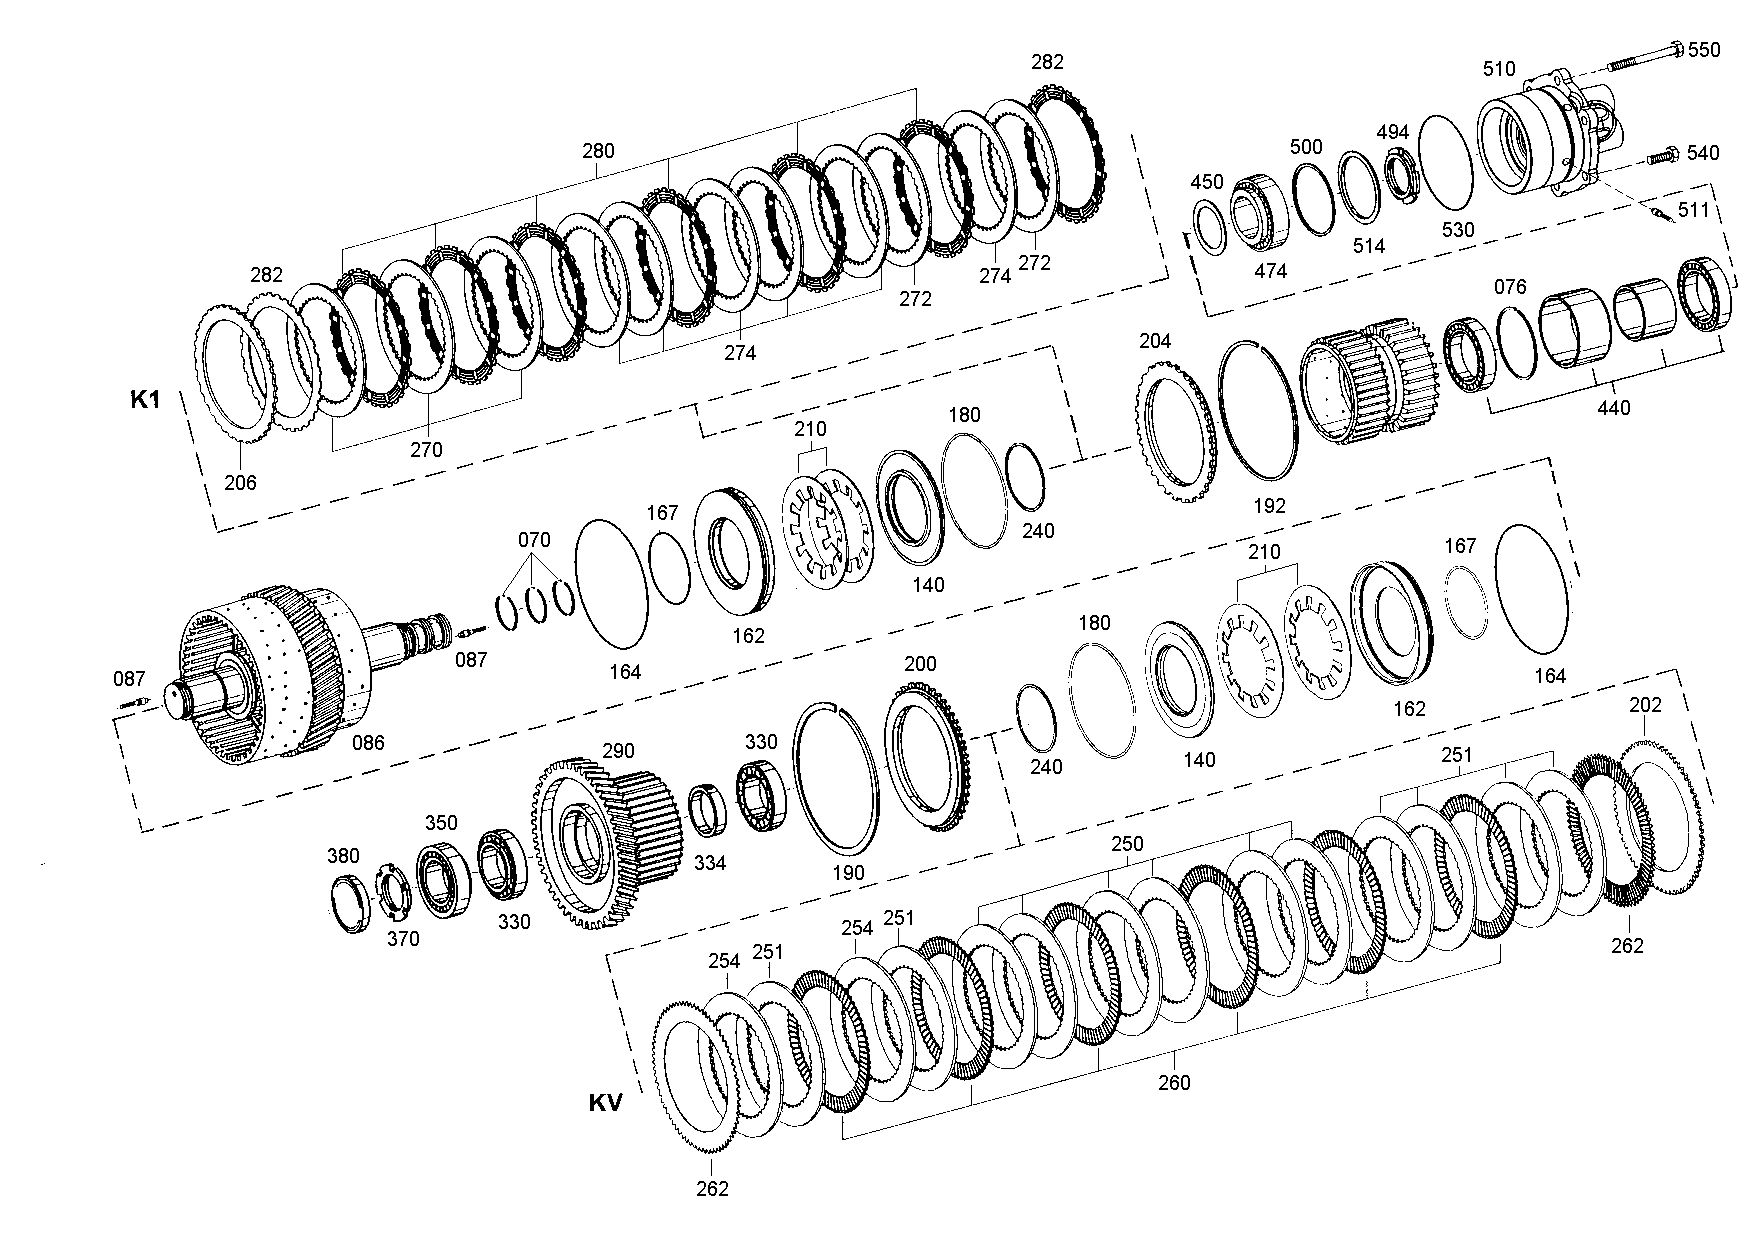 drawing for SCHOPF MASCHINENBAU GMBH 119443 - WASHER (figure 4)